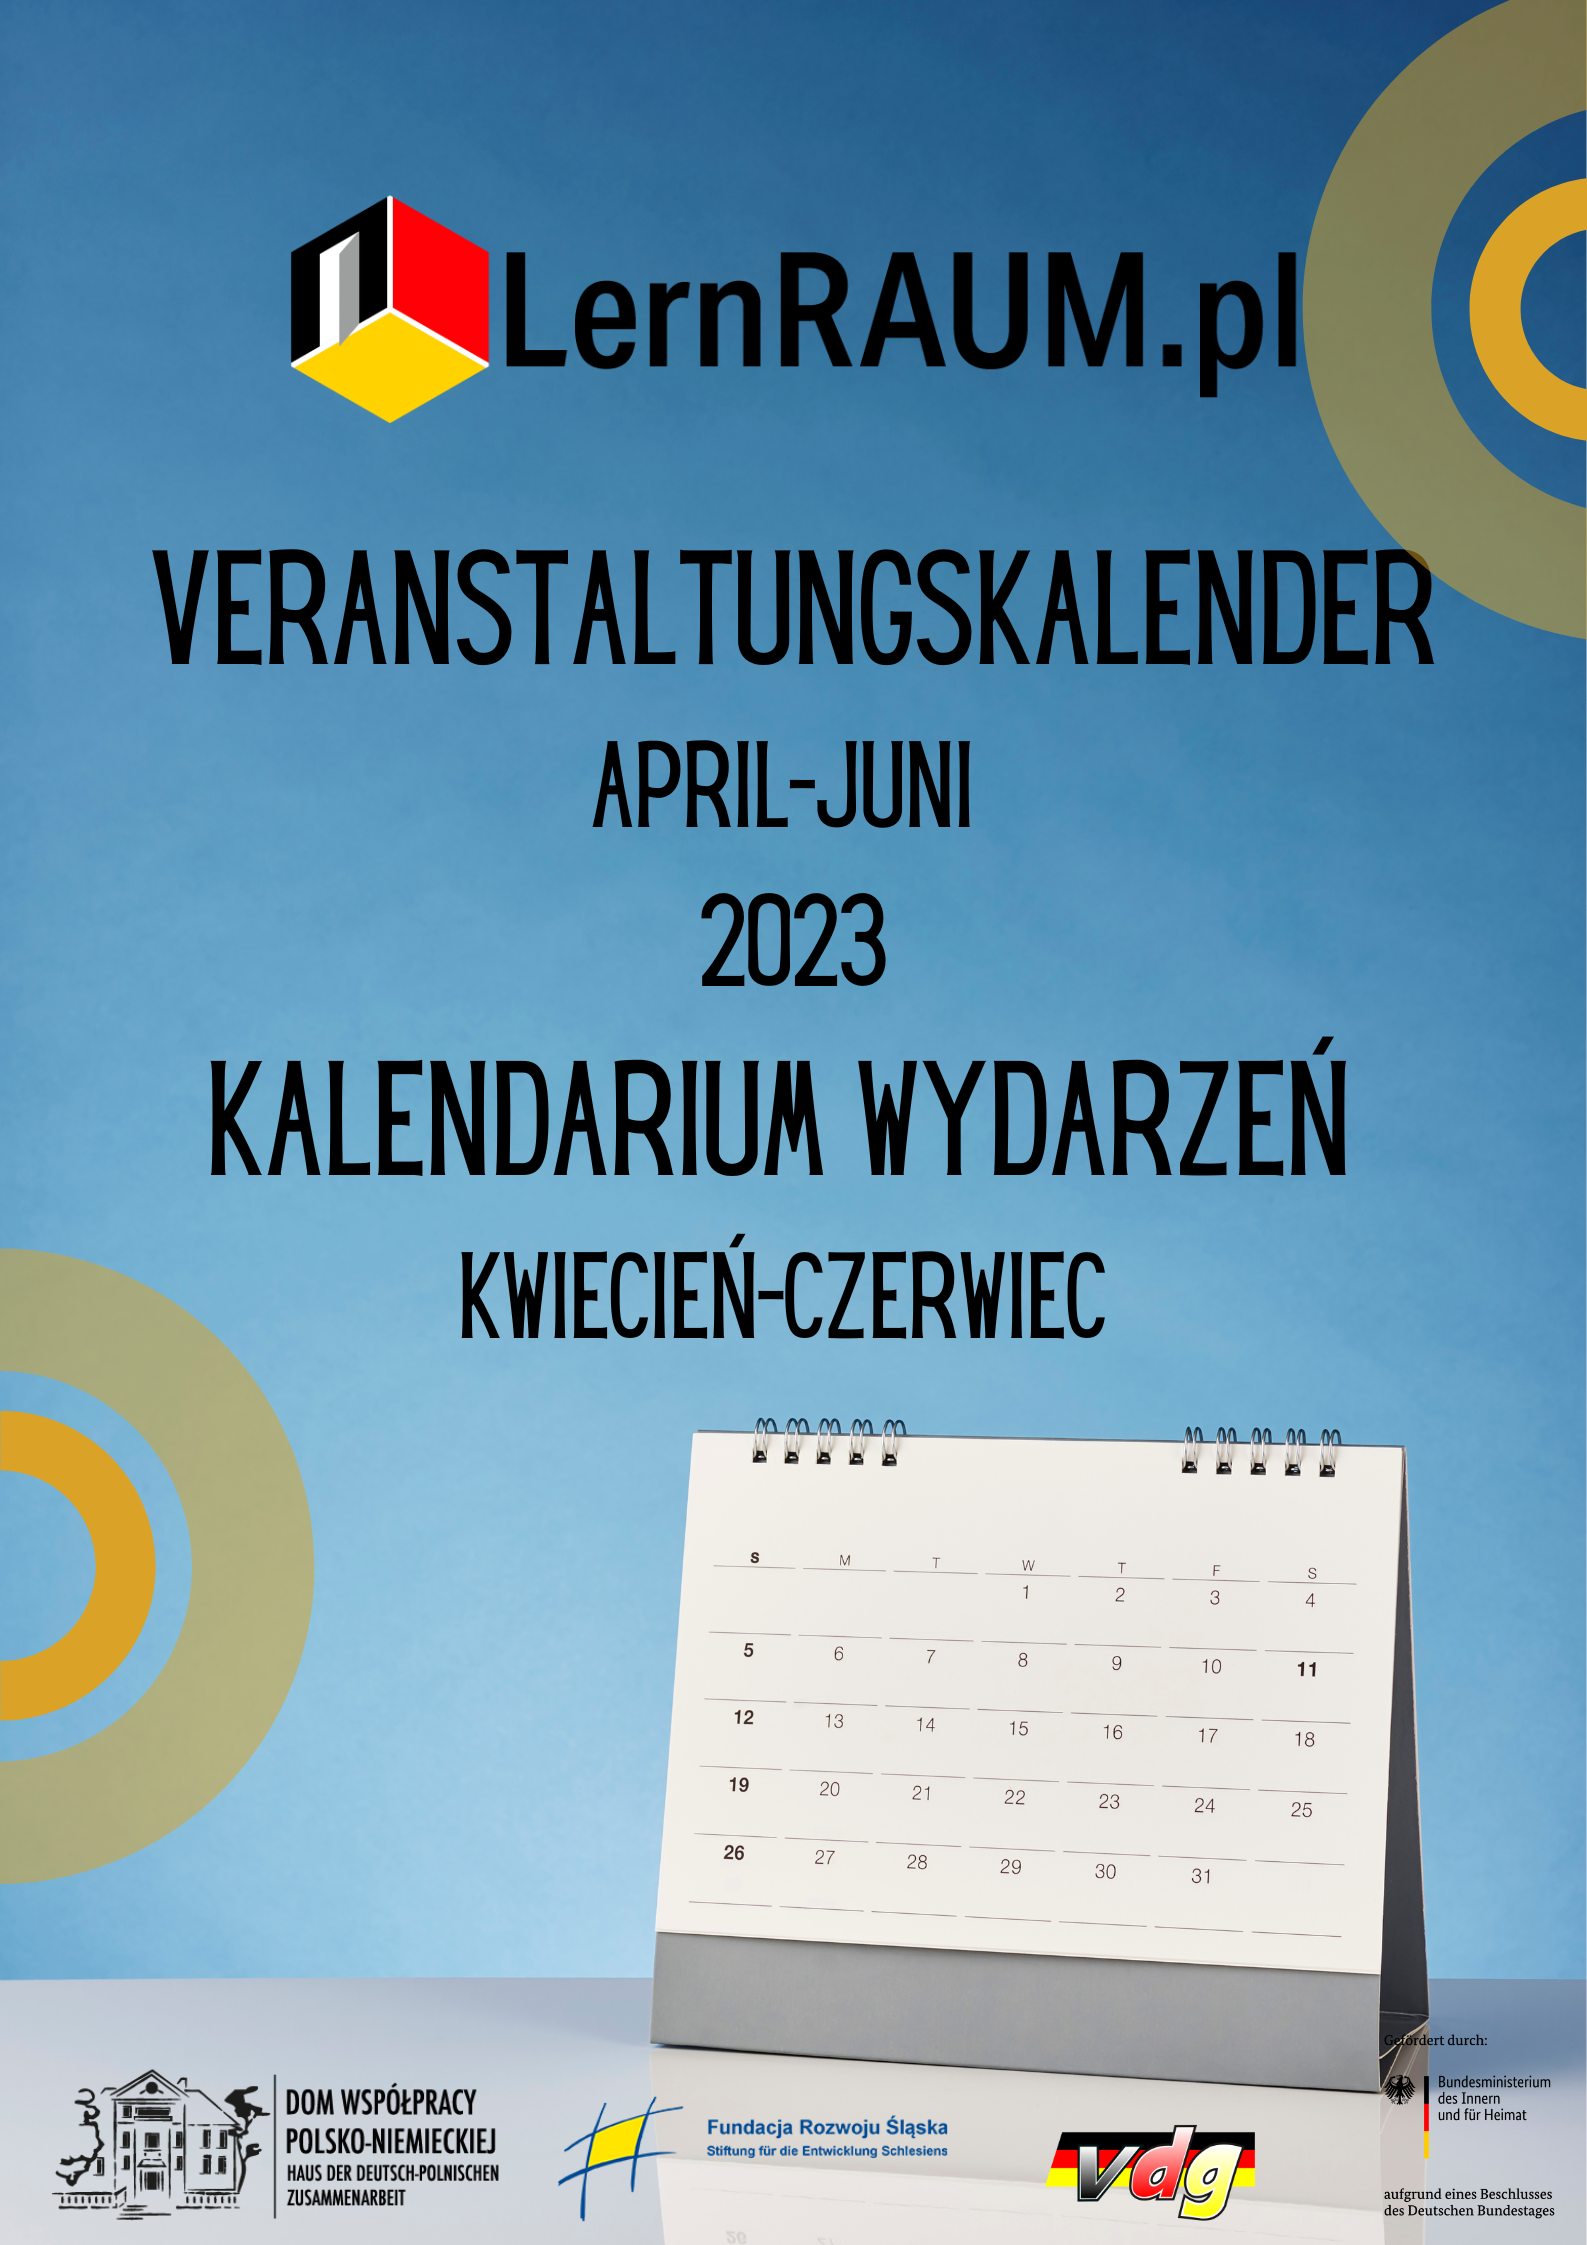 Kalendarium wydarzeń zaplanowanych w ramach projektu LernRAUM.pl w okresie kwiecień-czerwiec 2023